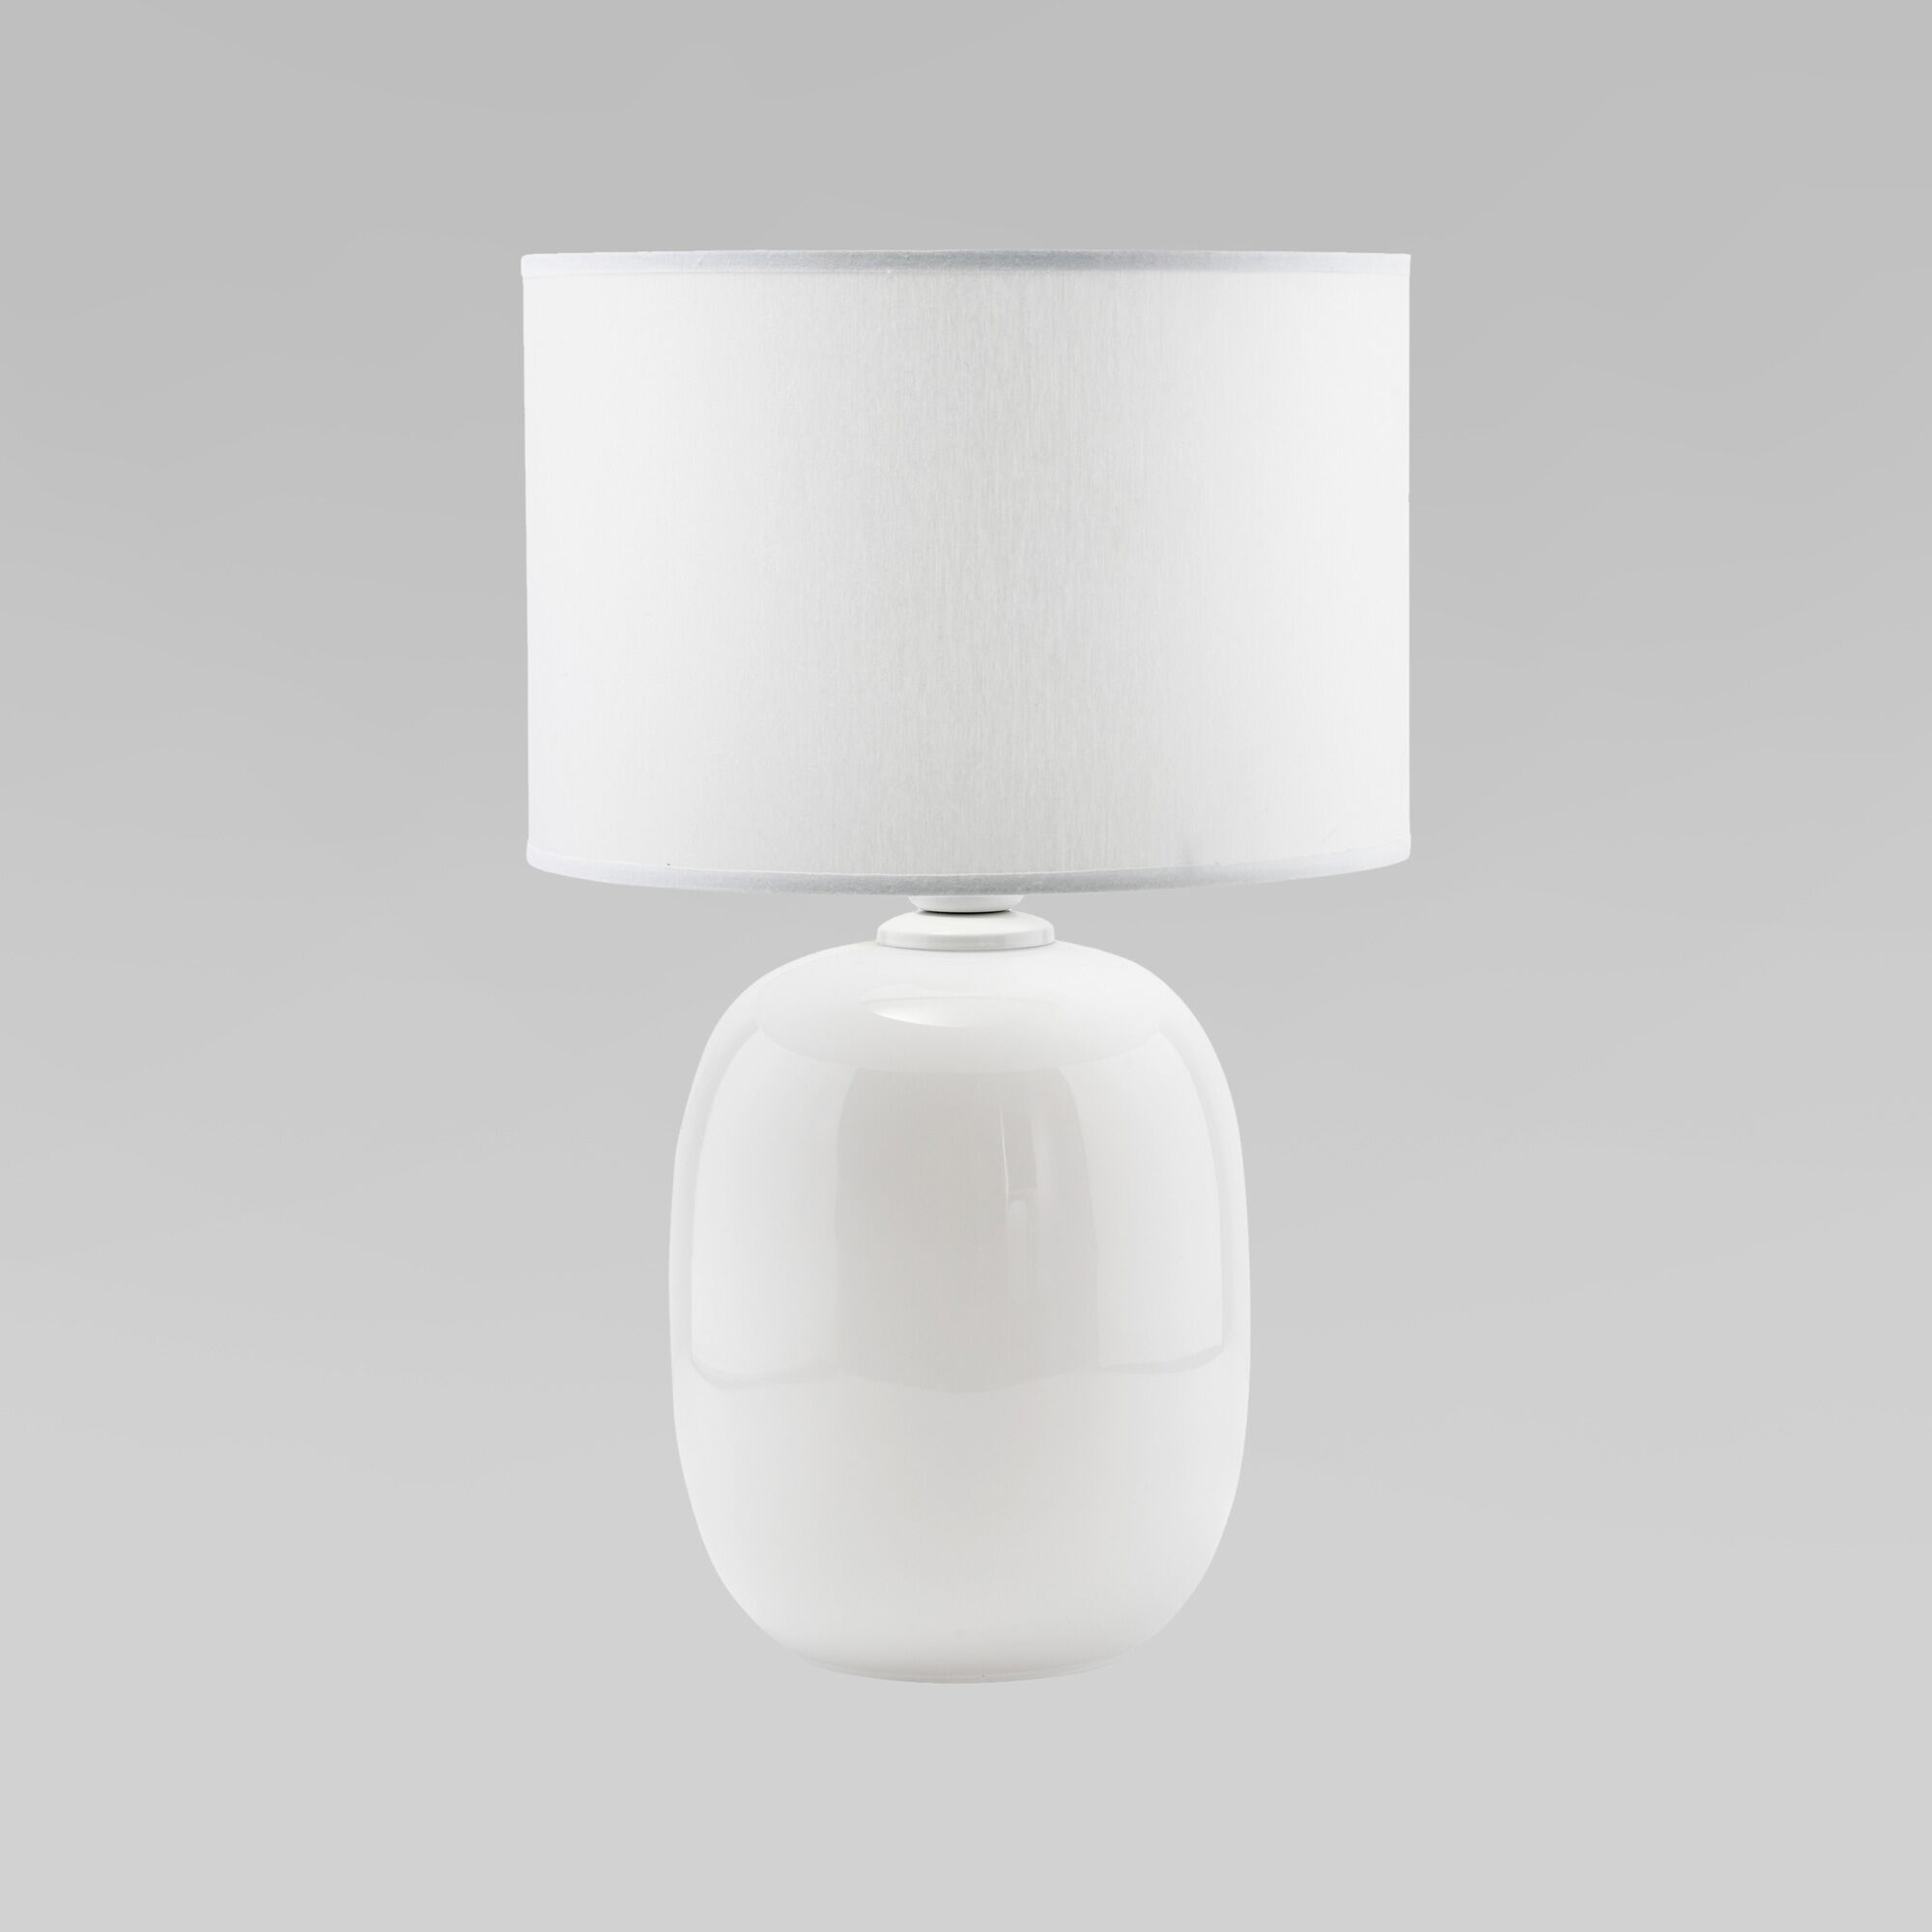 Настольная лампа 48 см, TK Lighting 5985 Melody, белый